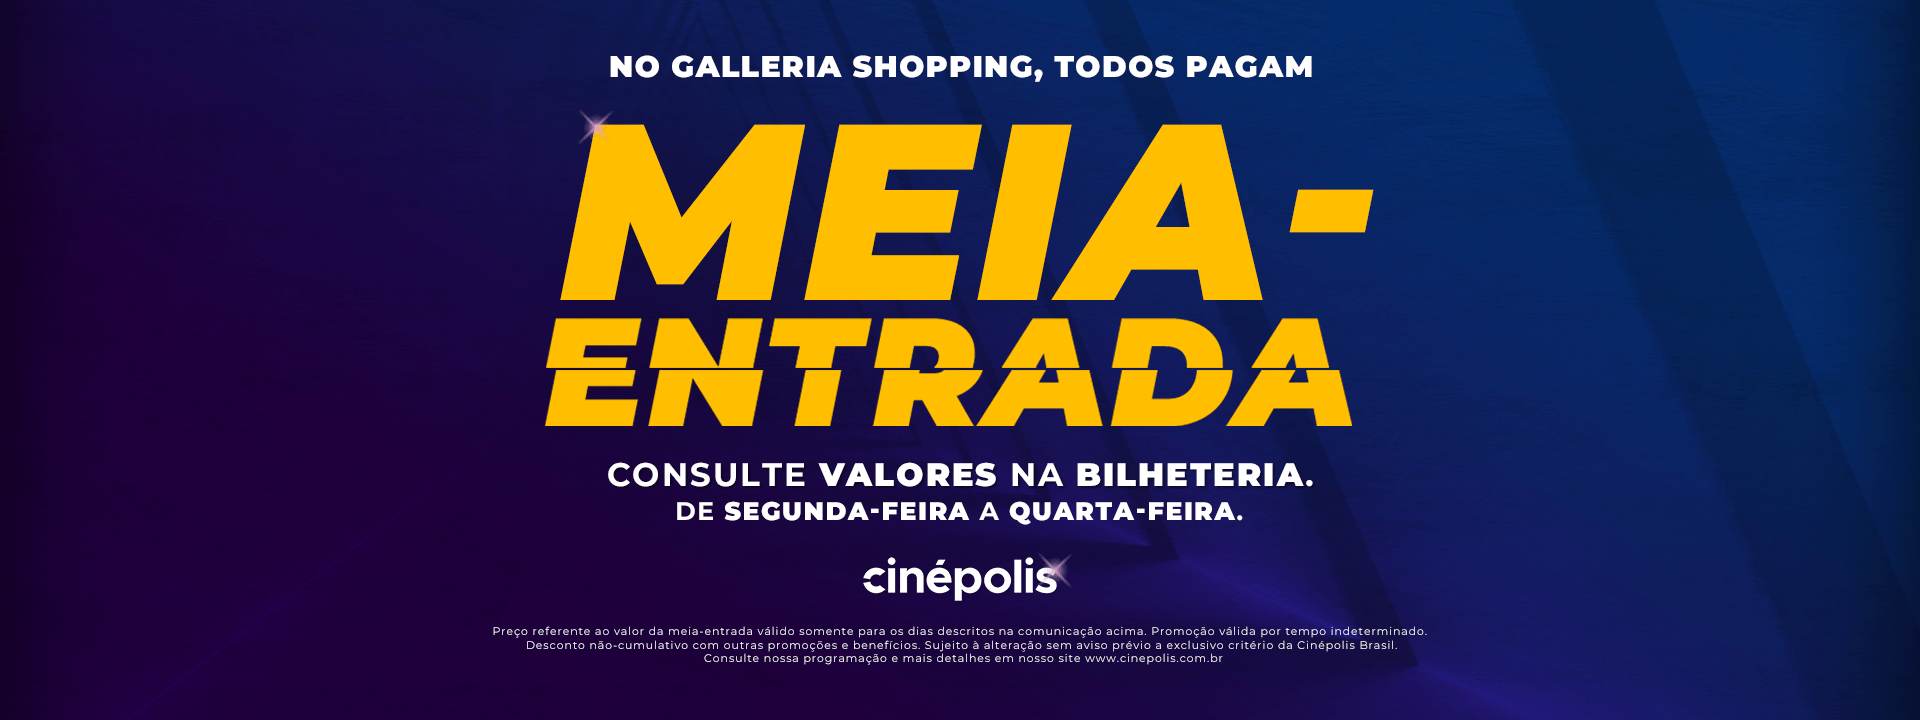 Cinépolis Galleria Shopping